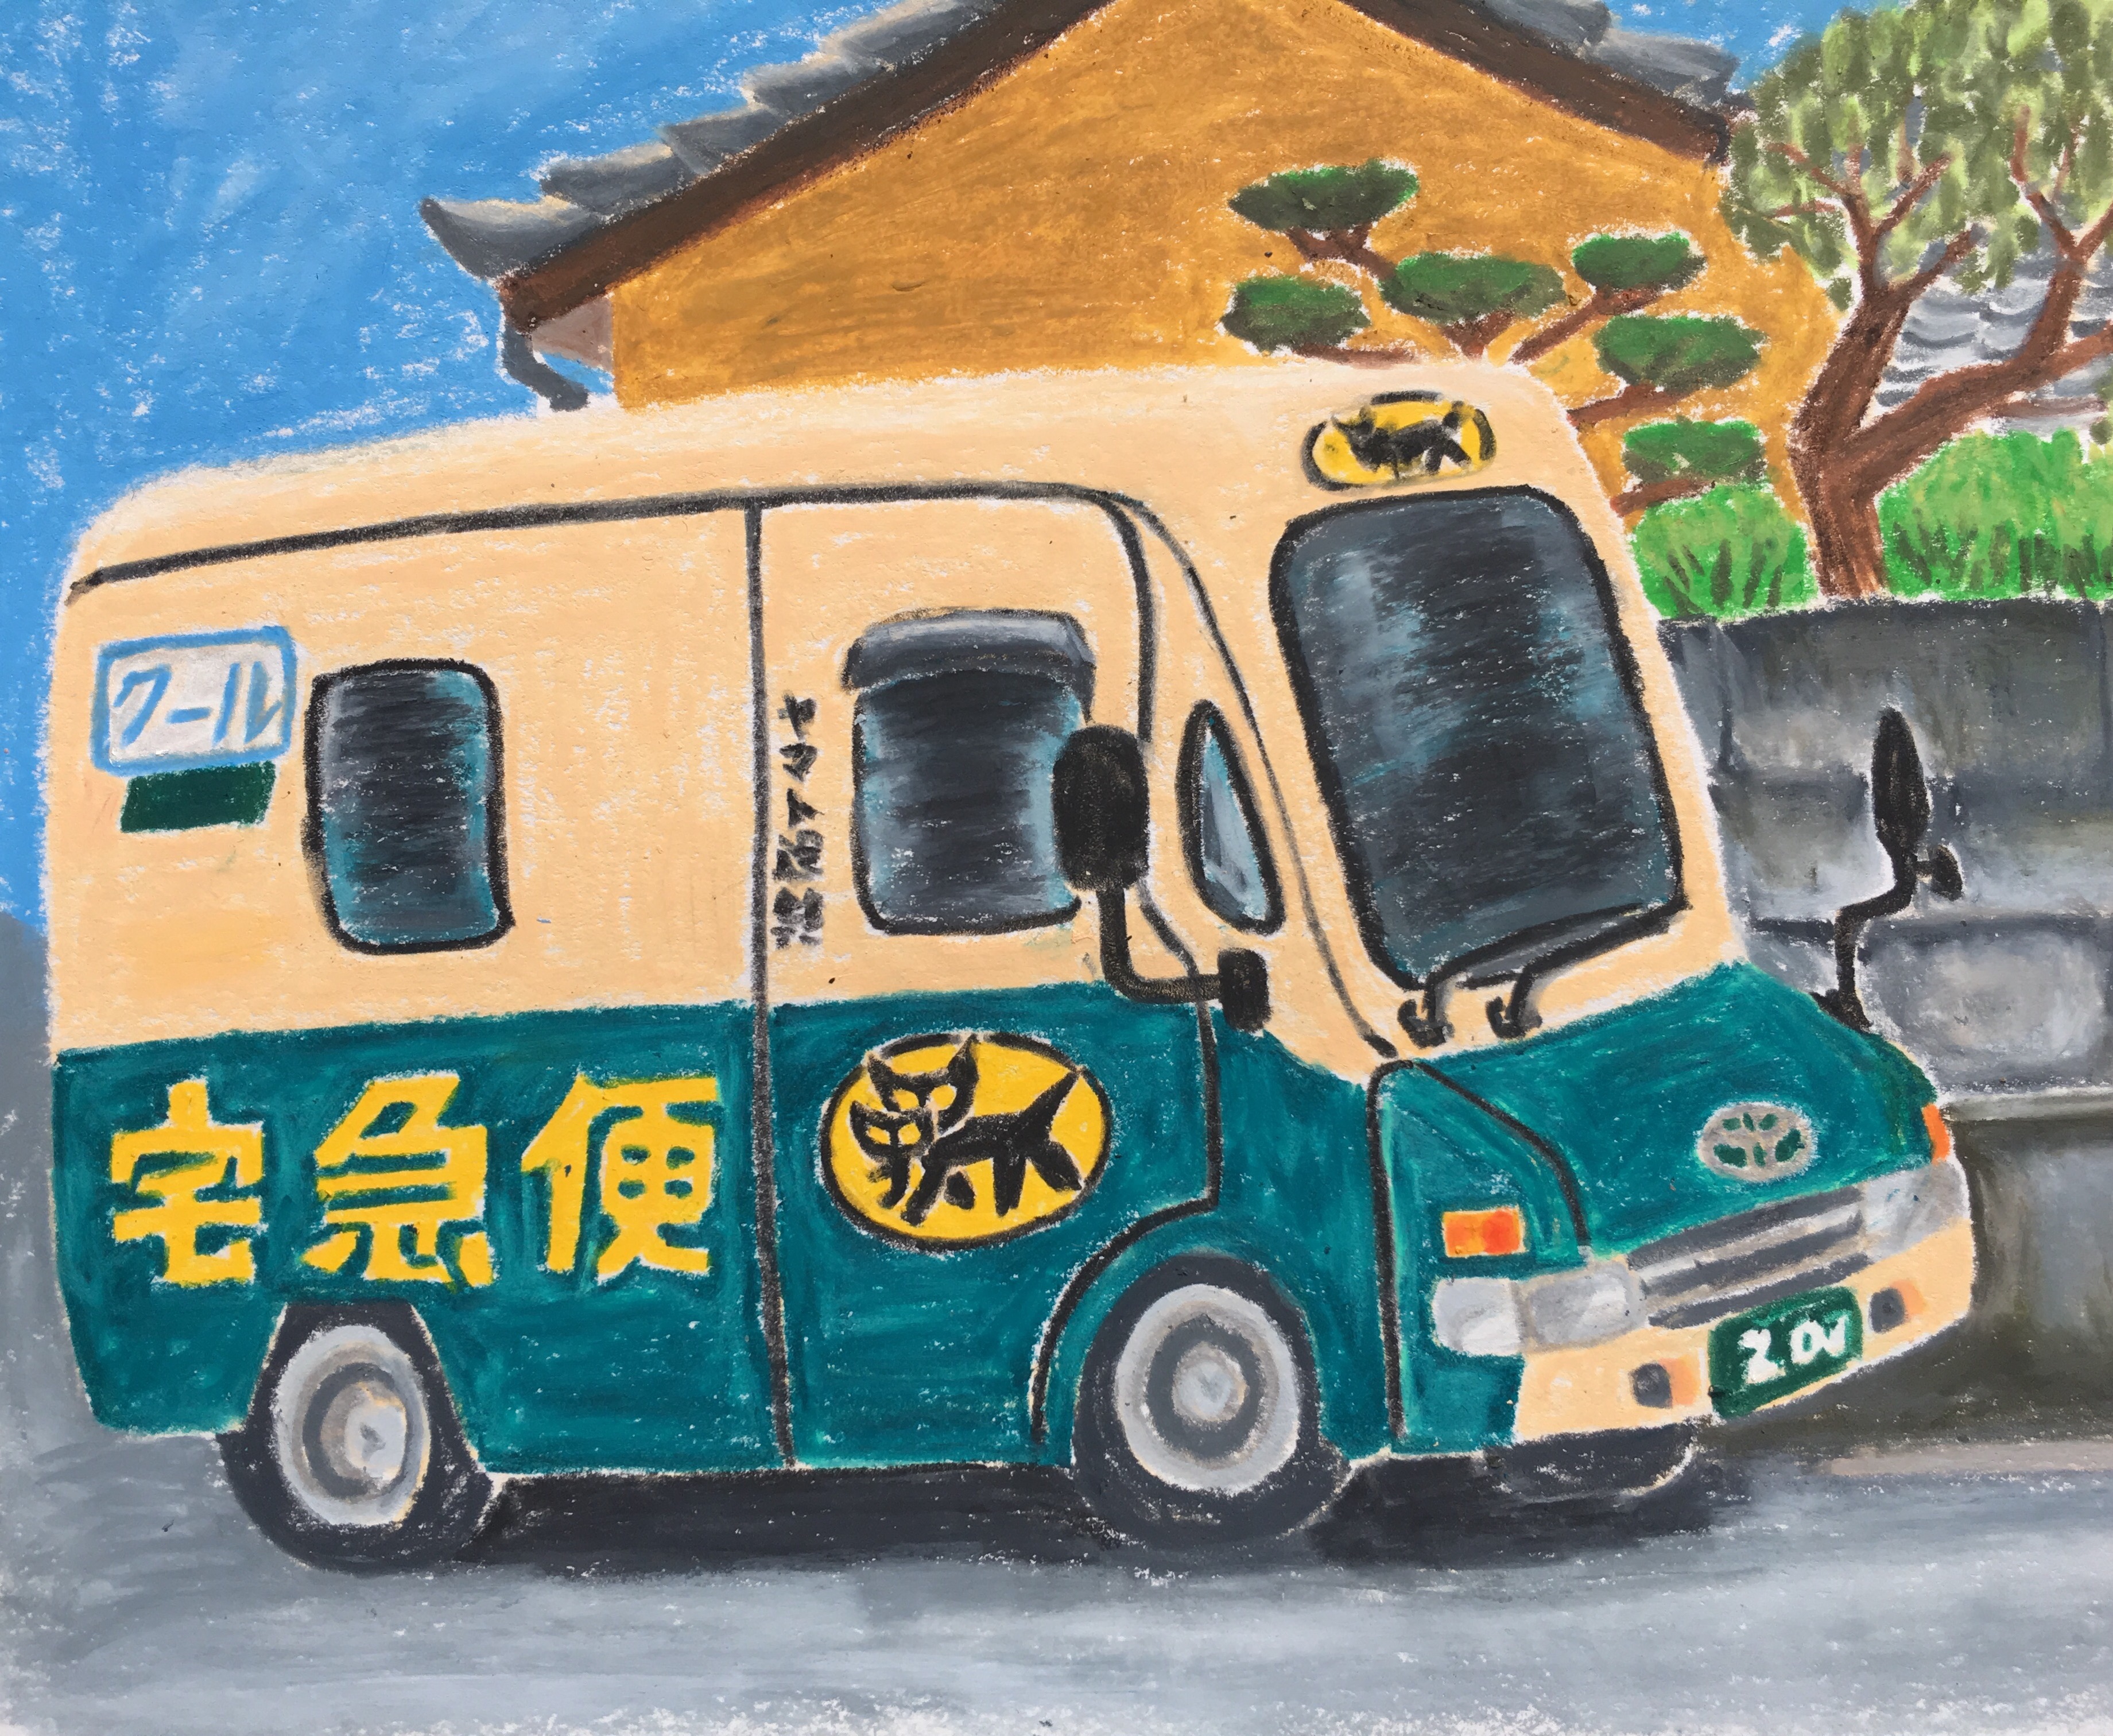 The Kuroneko truck